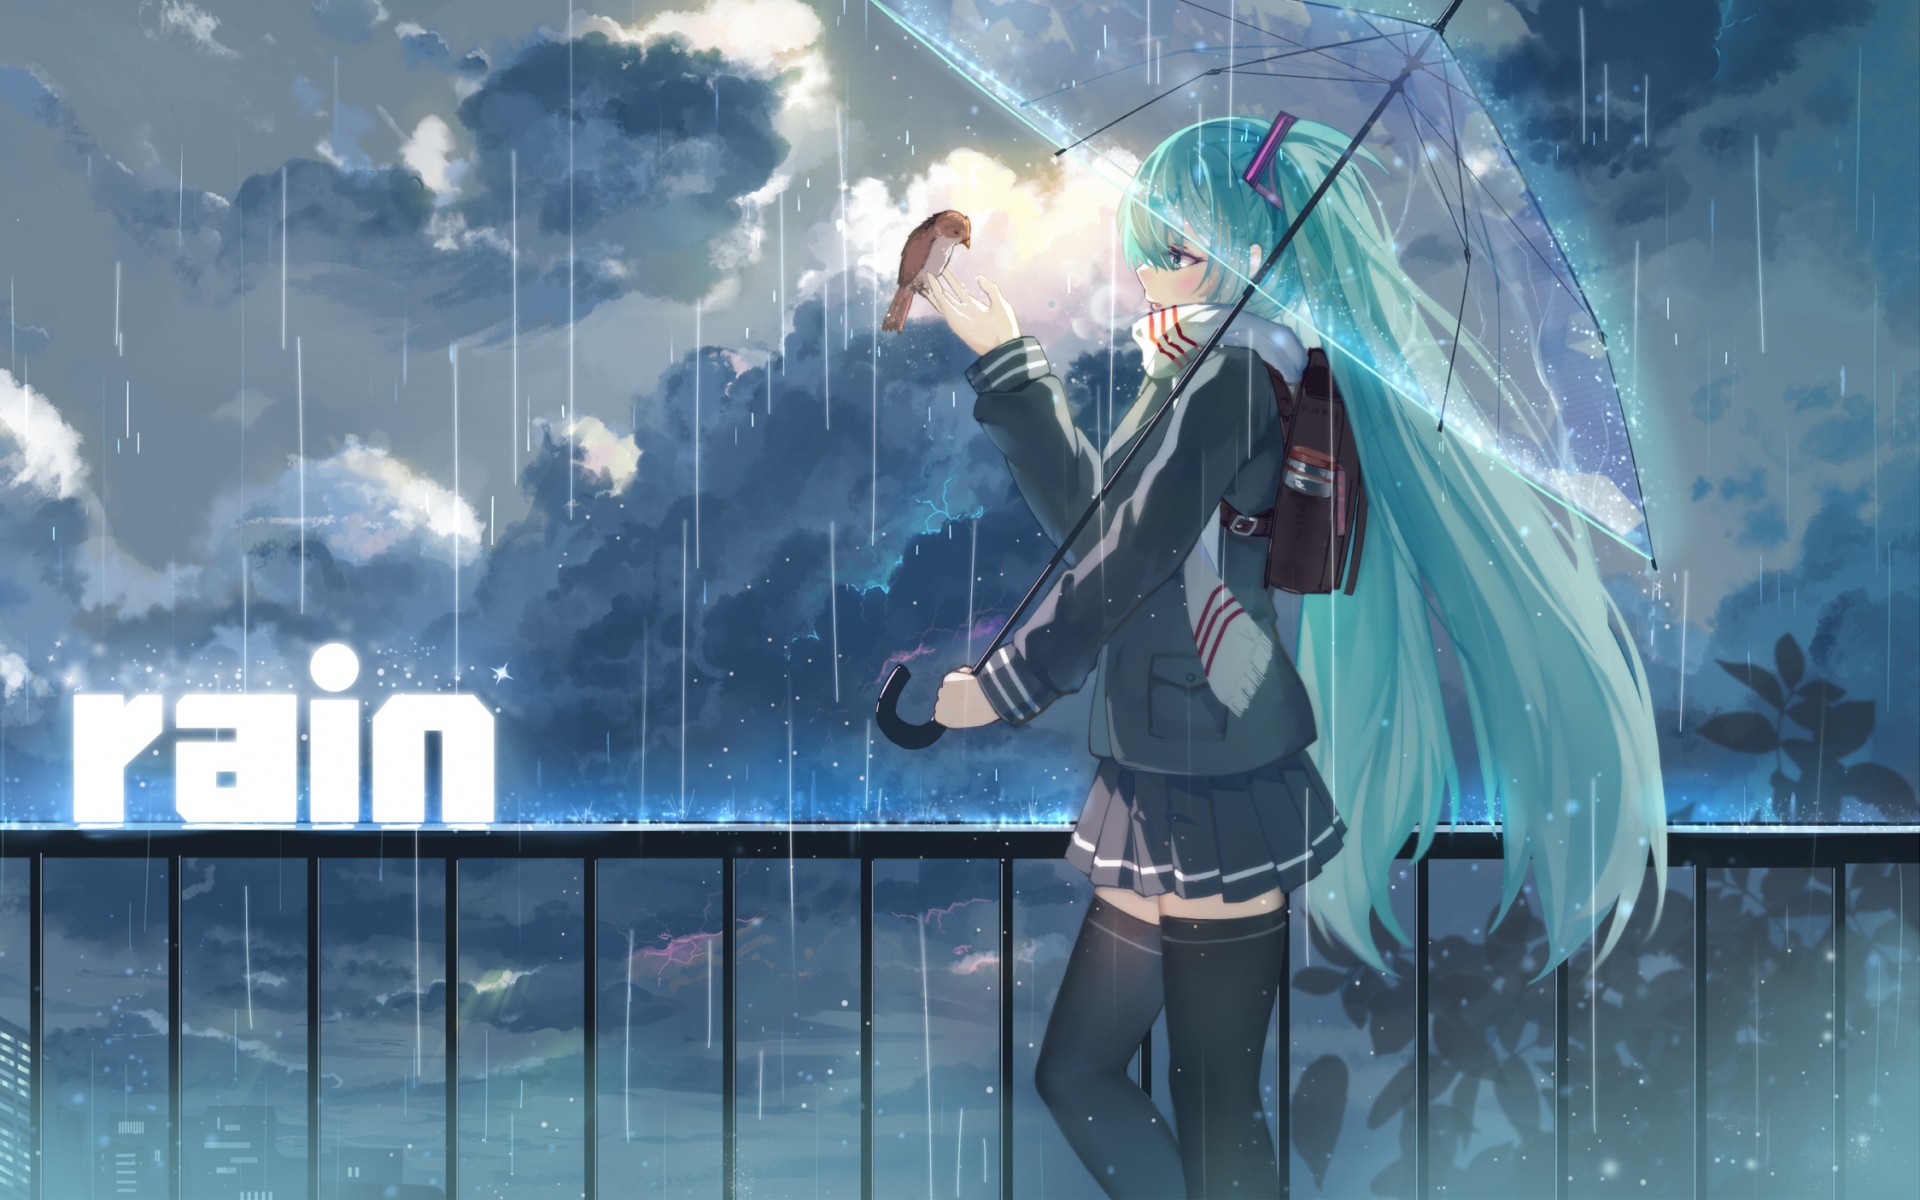 Картинки Haraguro вы, вокалоид, hatsune miku, девушка, зонтик, дождь фото и обои на рабочий стол